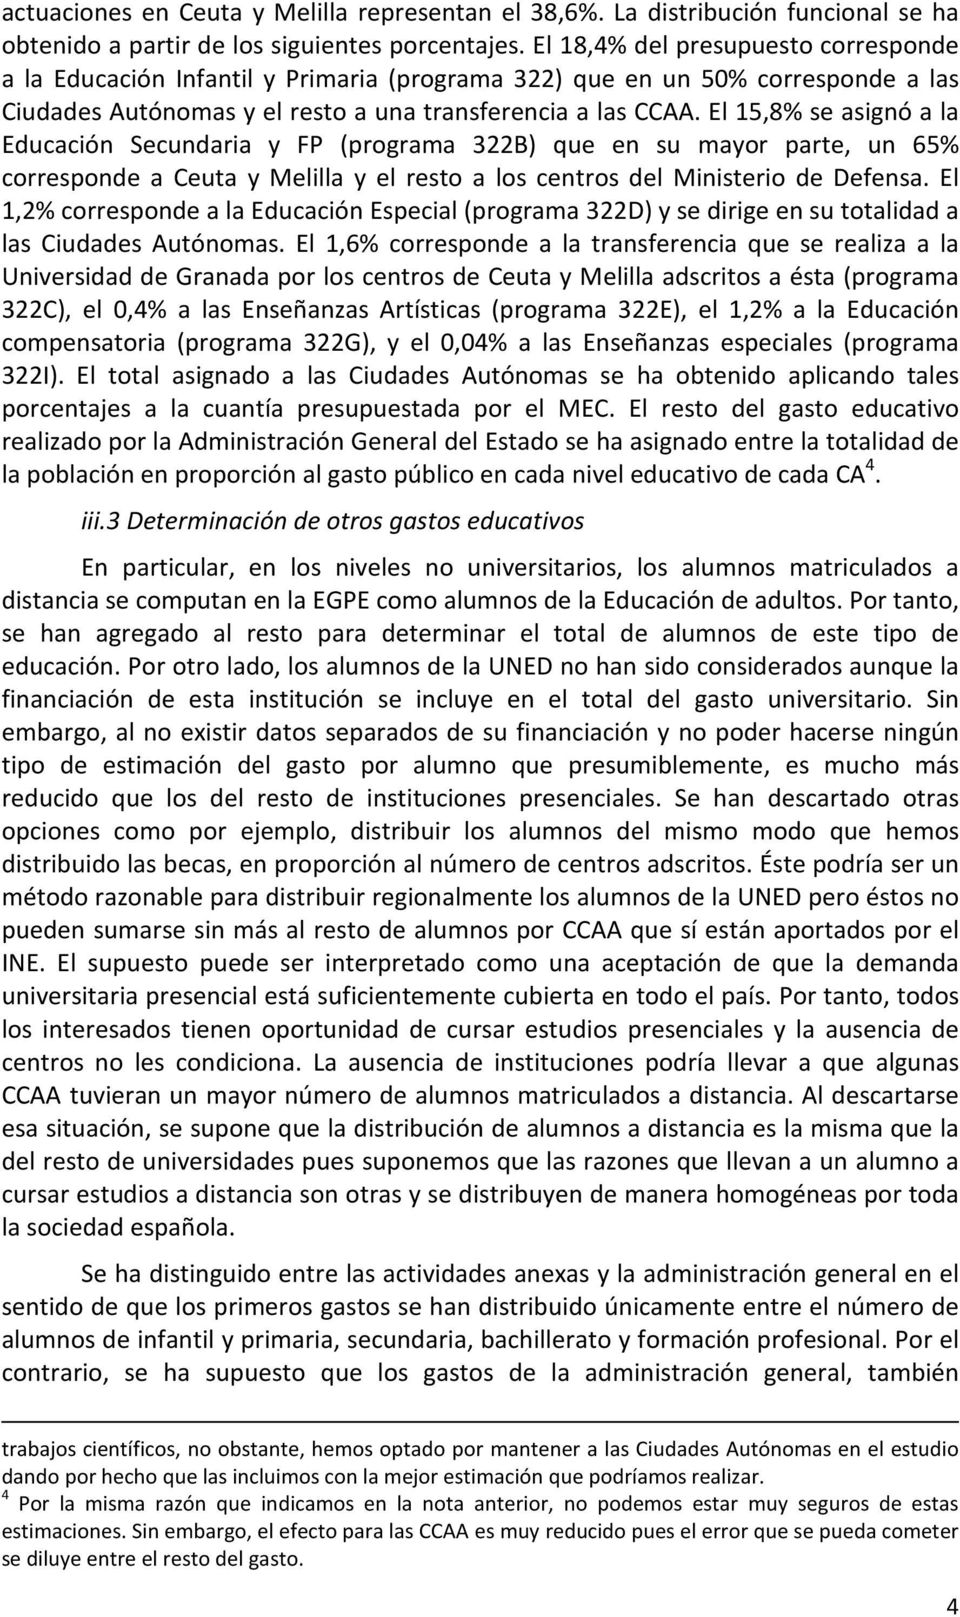 El 15,8% se asignó a la Educación Secundaria y FP (programa 322B) que en su mayor parte, un 65% corresponde a Ceuta y Melilla y el resto a los centros del Ministerio de Defensa.